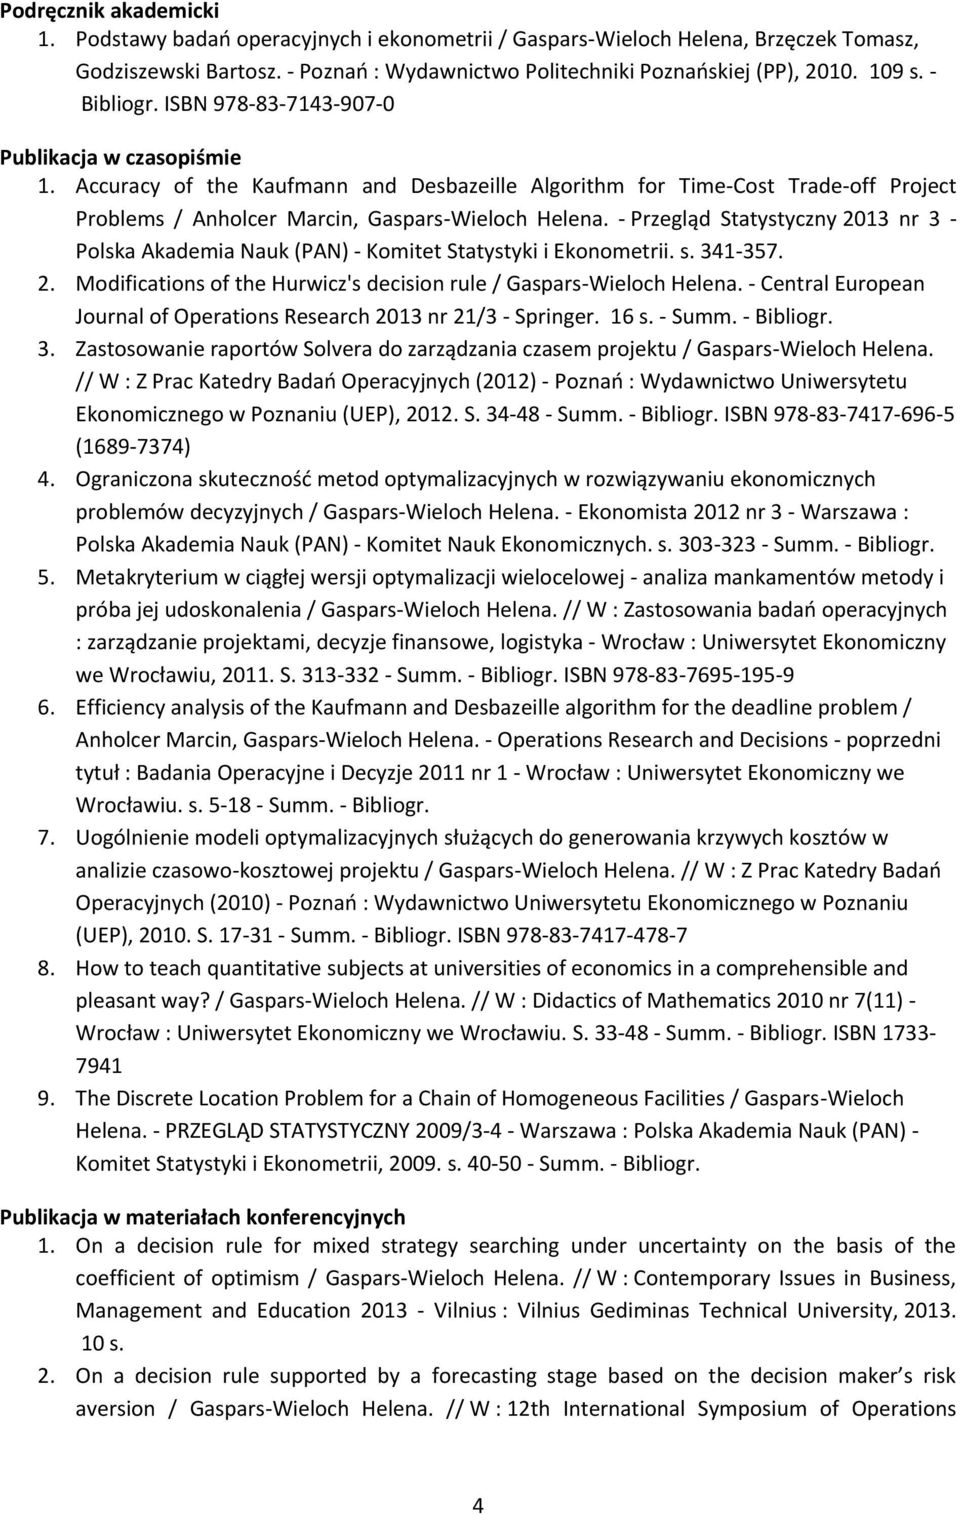 - Przegląd Statystyczny 2013 nr 3 - Polska Akademia Nauk (PAN) - Komitet Statystyki i Ekonometrii. s. 341-357. 2. Modifications of the Hurwicz's decision rule / Gaspars-Wieloch Helena.